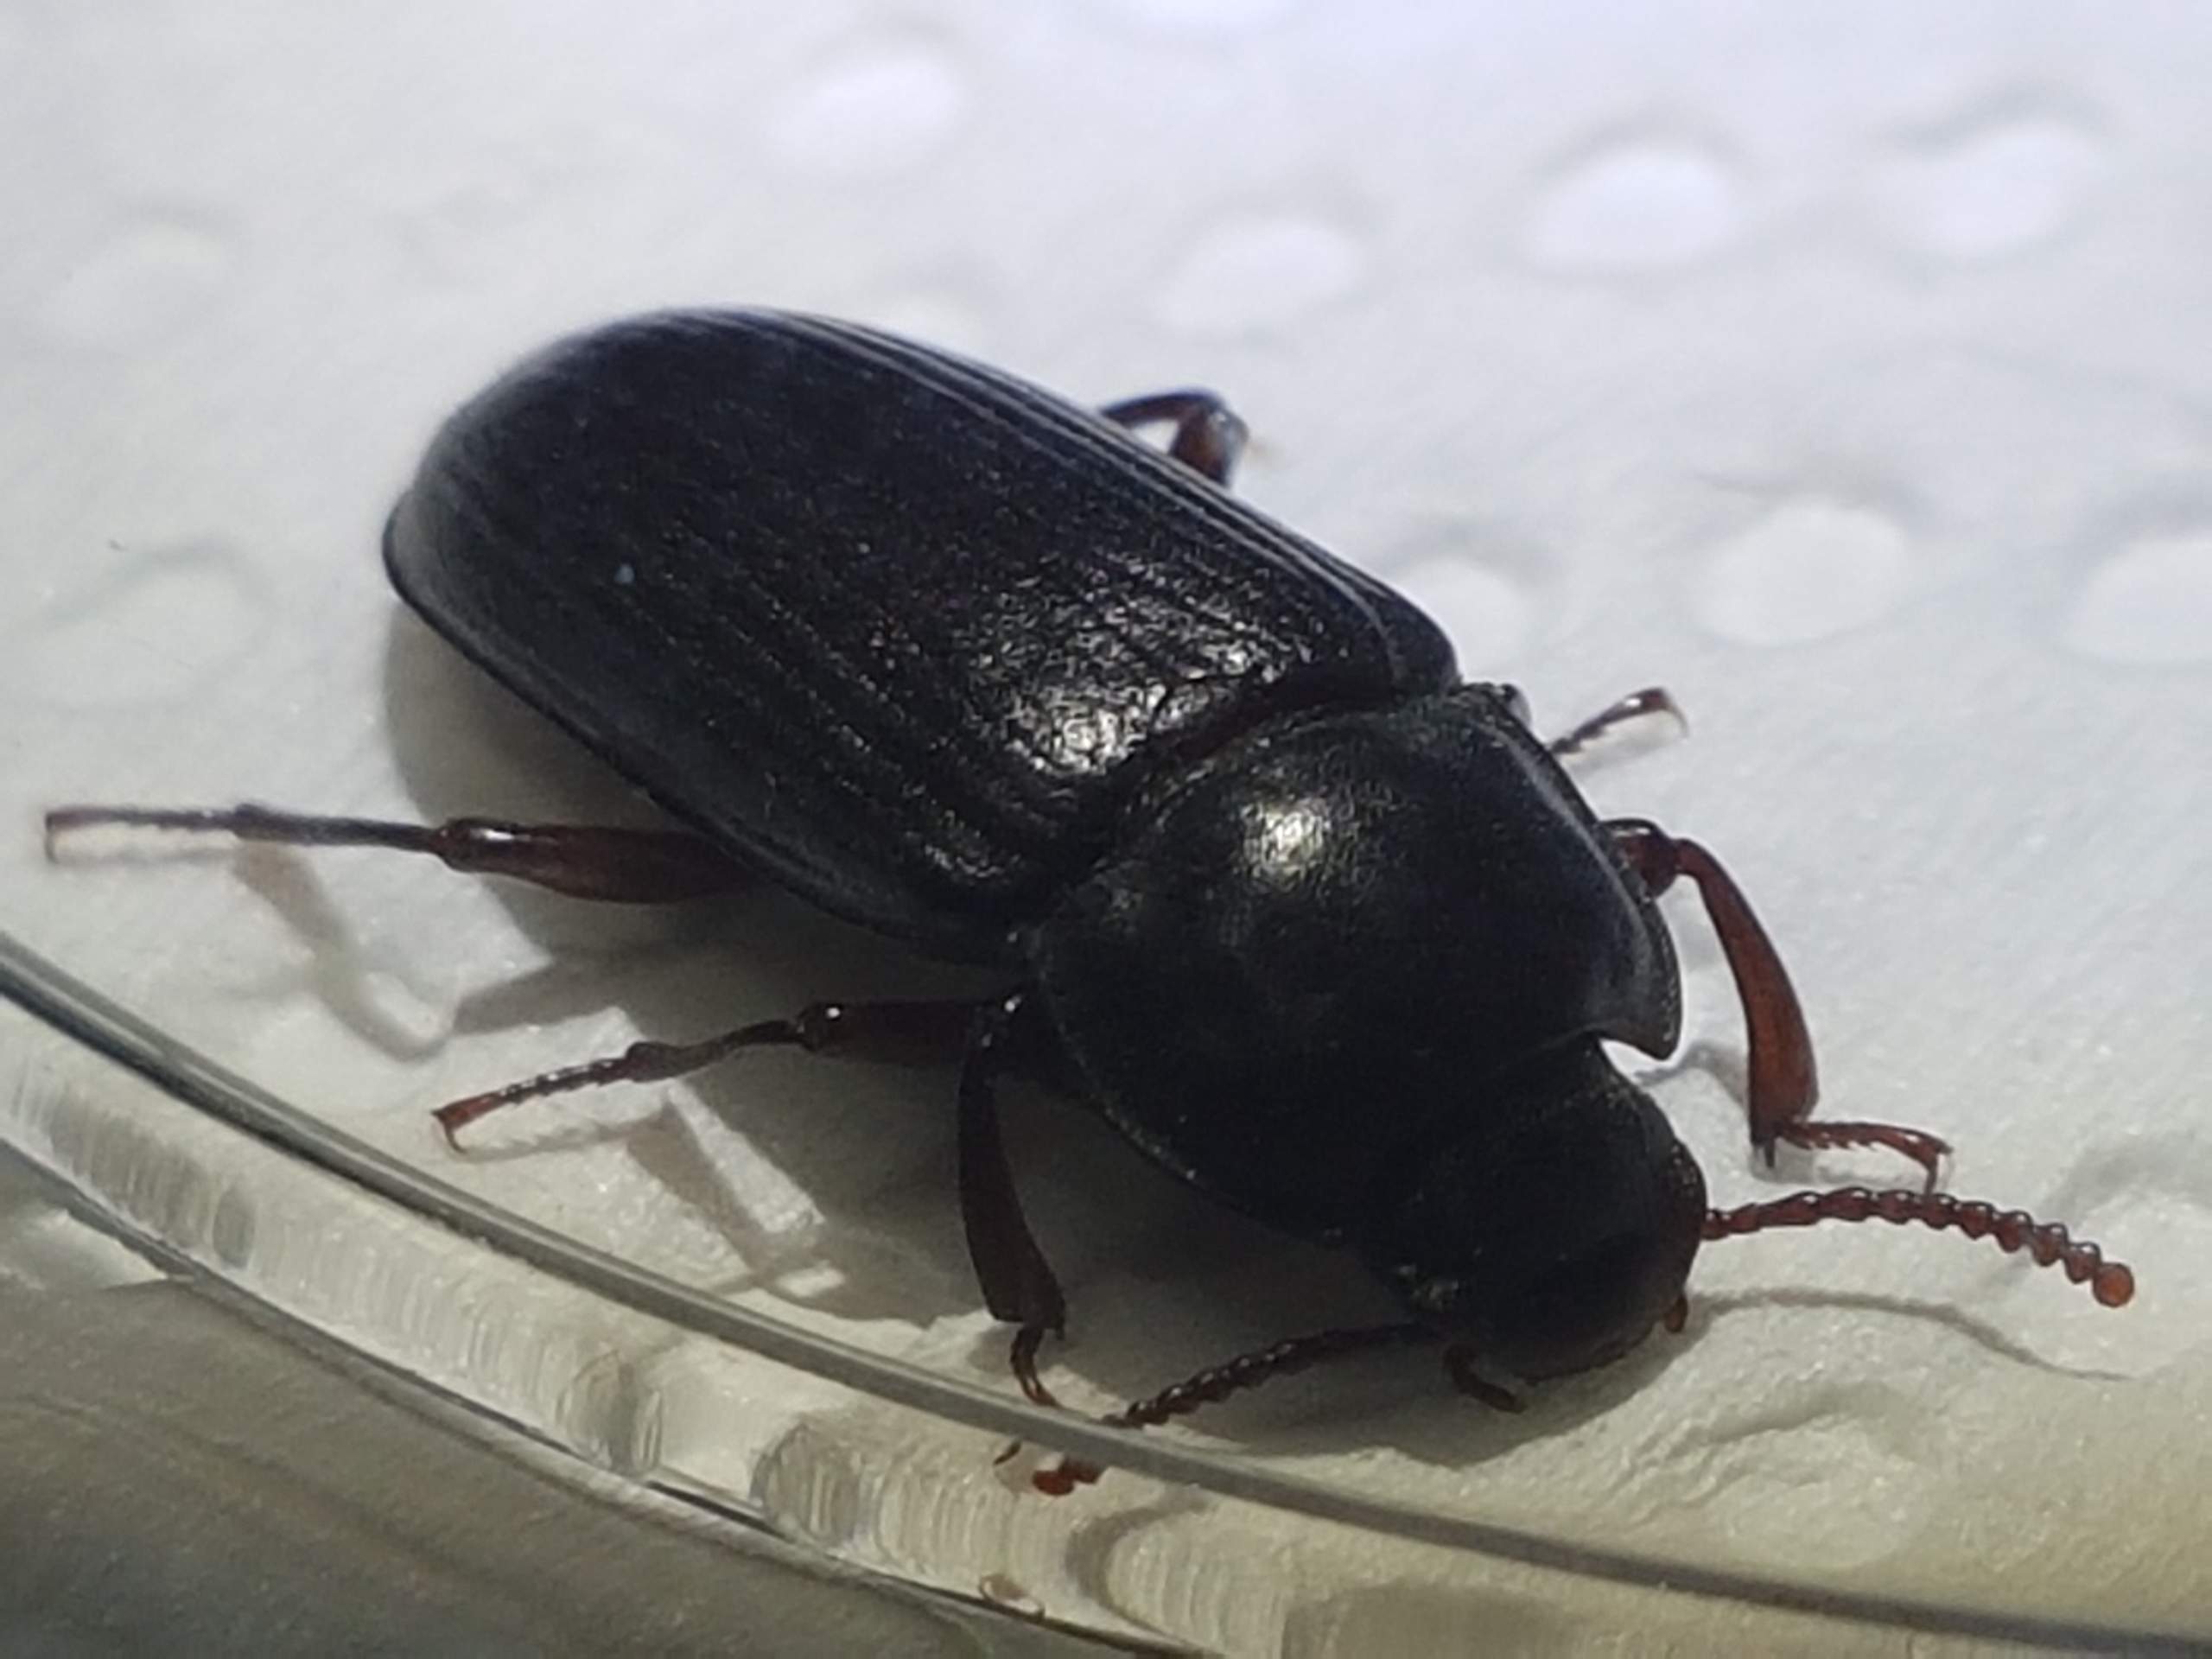 Großer Schwarzer Käfer: dieser könnte es sein